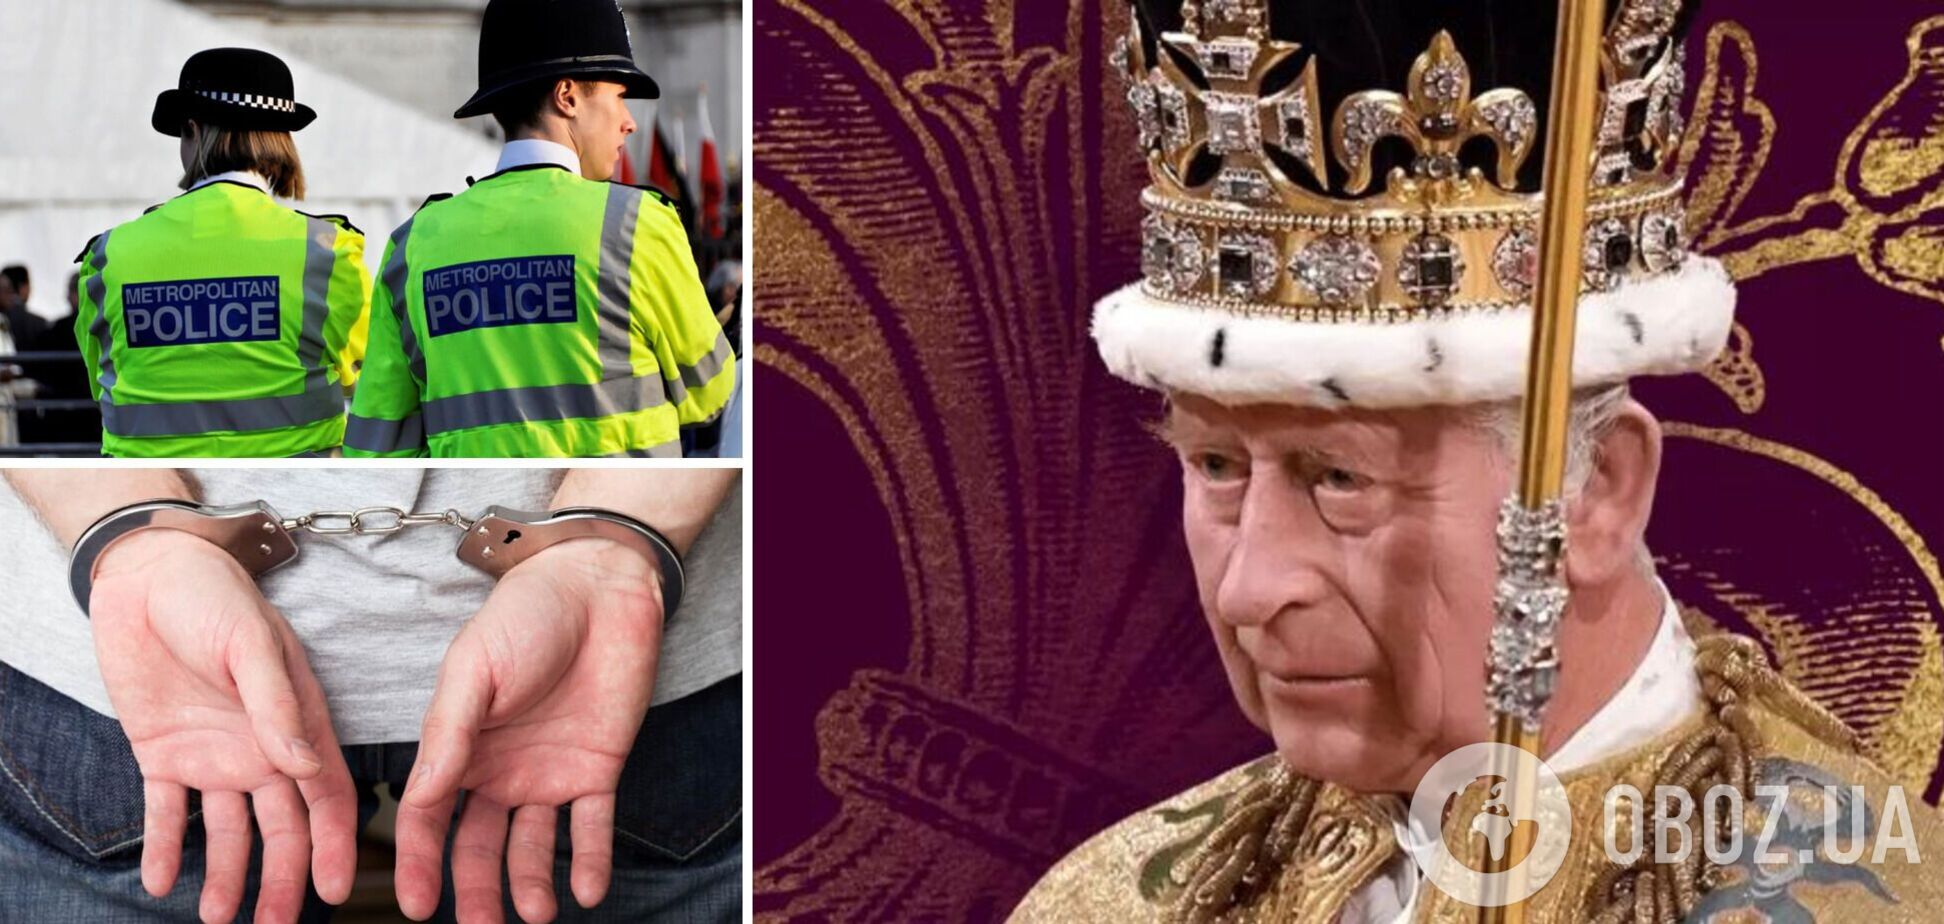 Нарушали общественный порядок: в Лондоне во время коронации Чарльза III задержали более 50 протестующих